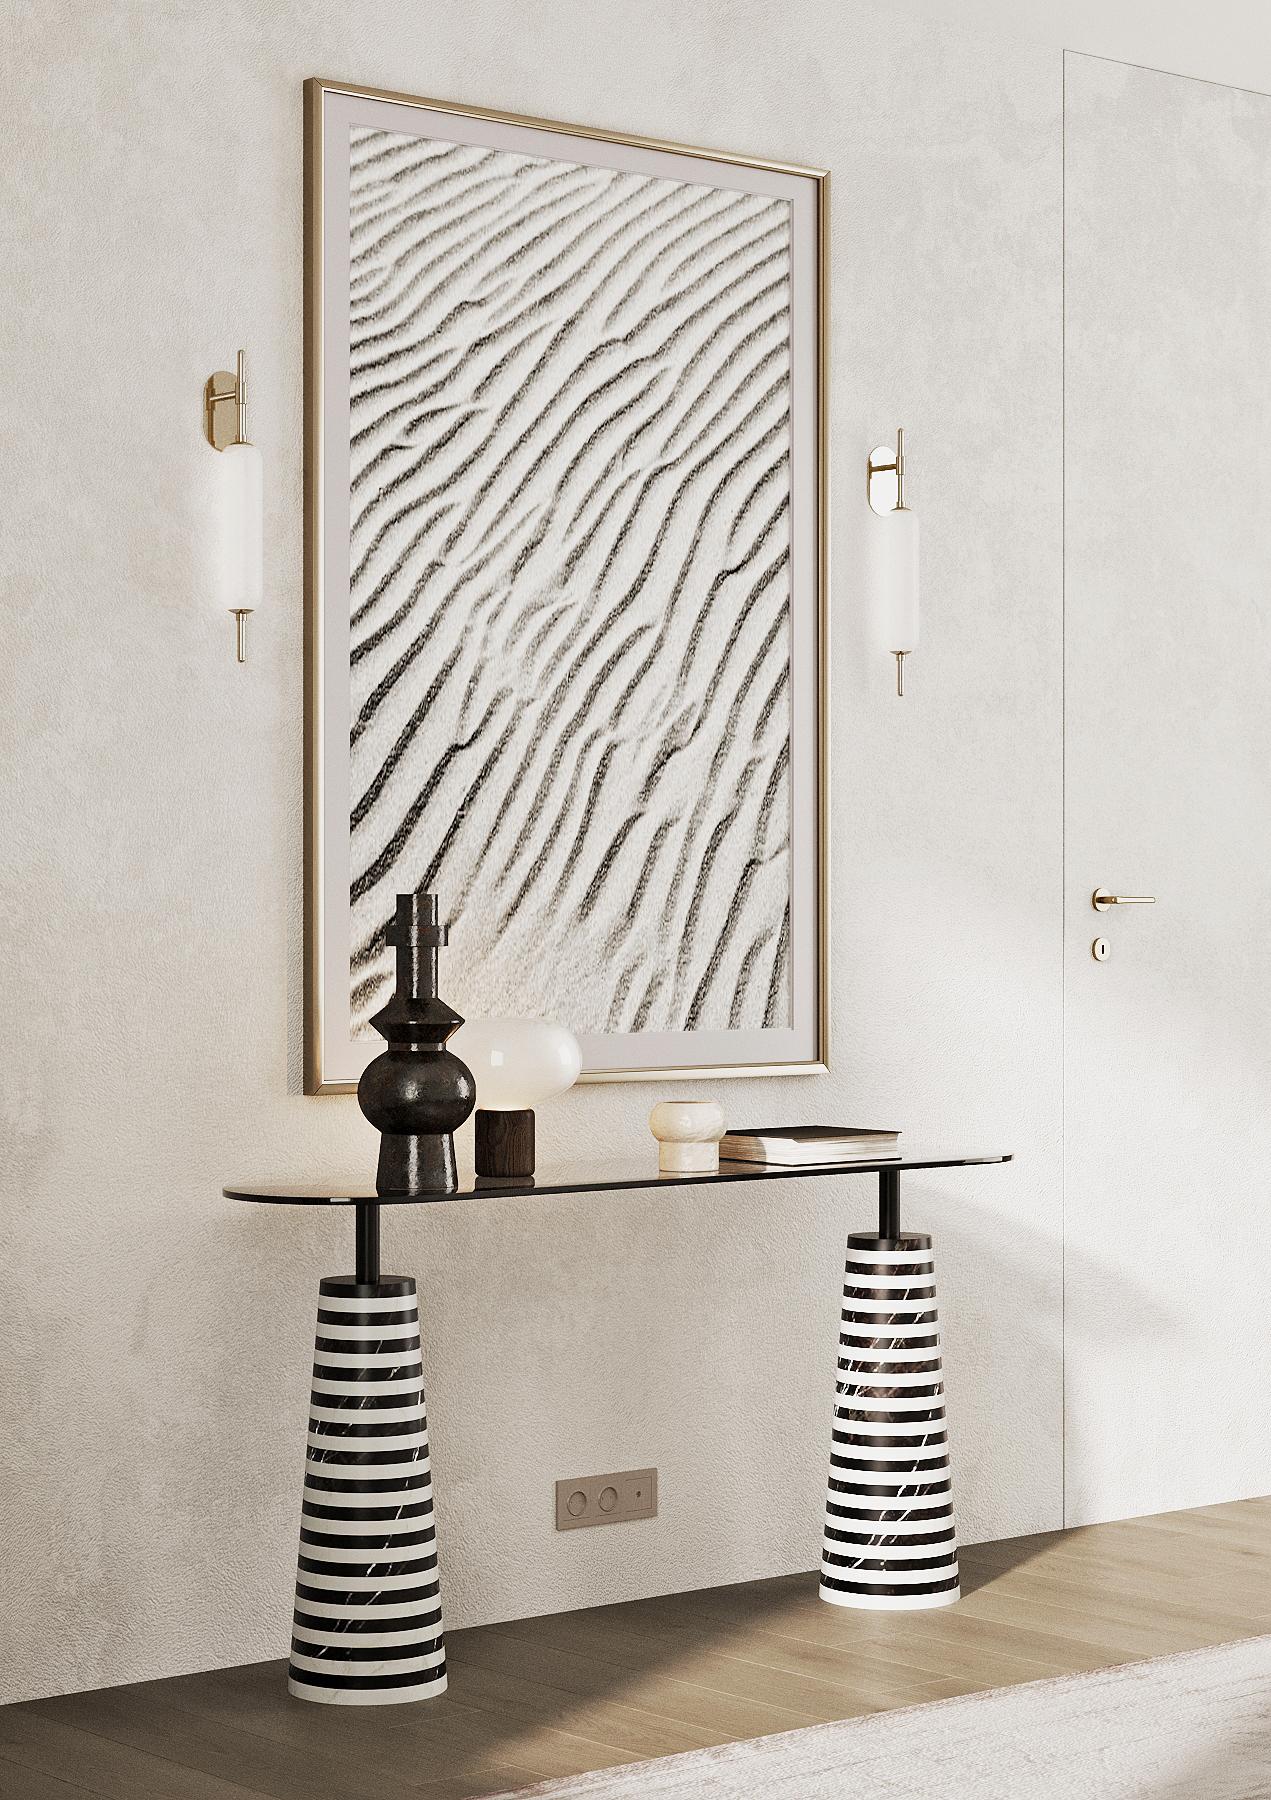 Cette table console futuriste présente un plateau en verre securit ovale noir reposant sur une base solide en marbre noir et blanc à rayures symétriques. Fabriqué avec une belle forme contemporaine, il peut compléter un large éventail de styles de